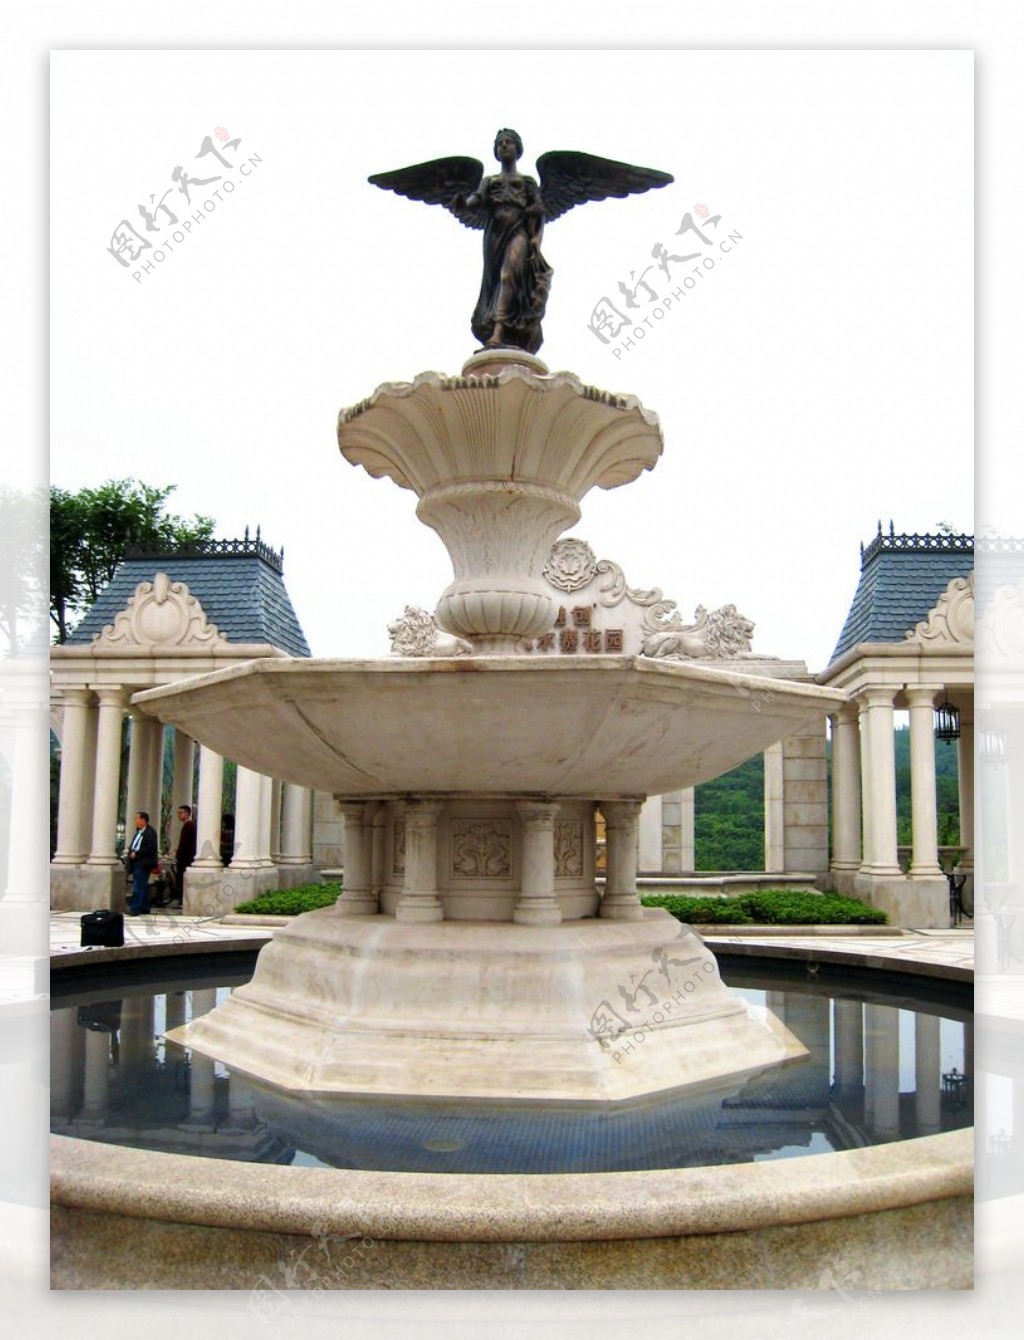 凡尔赛花园图片